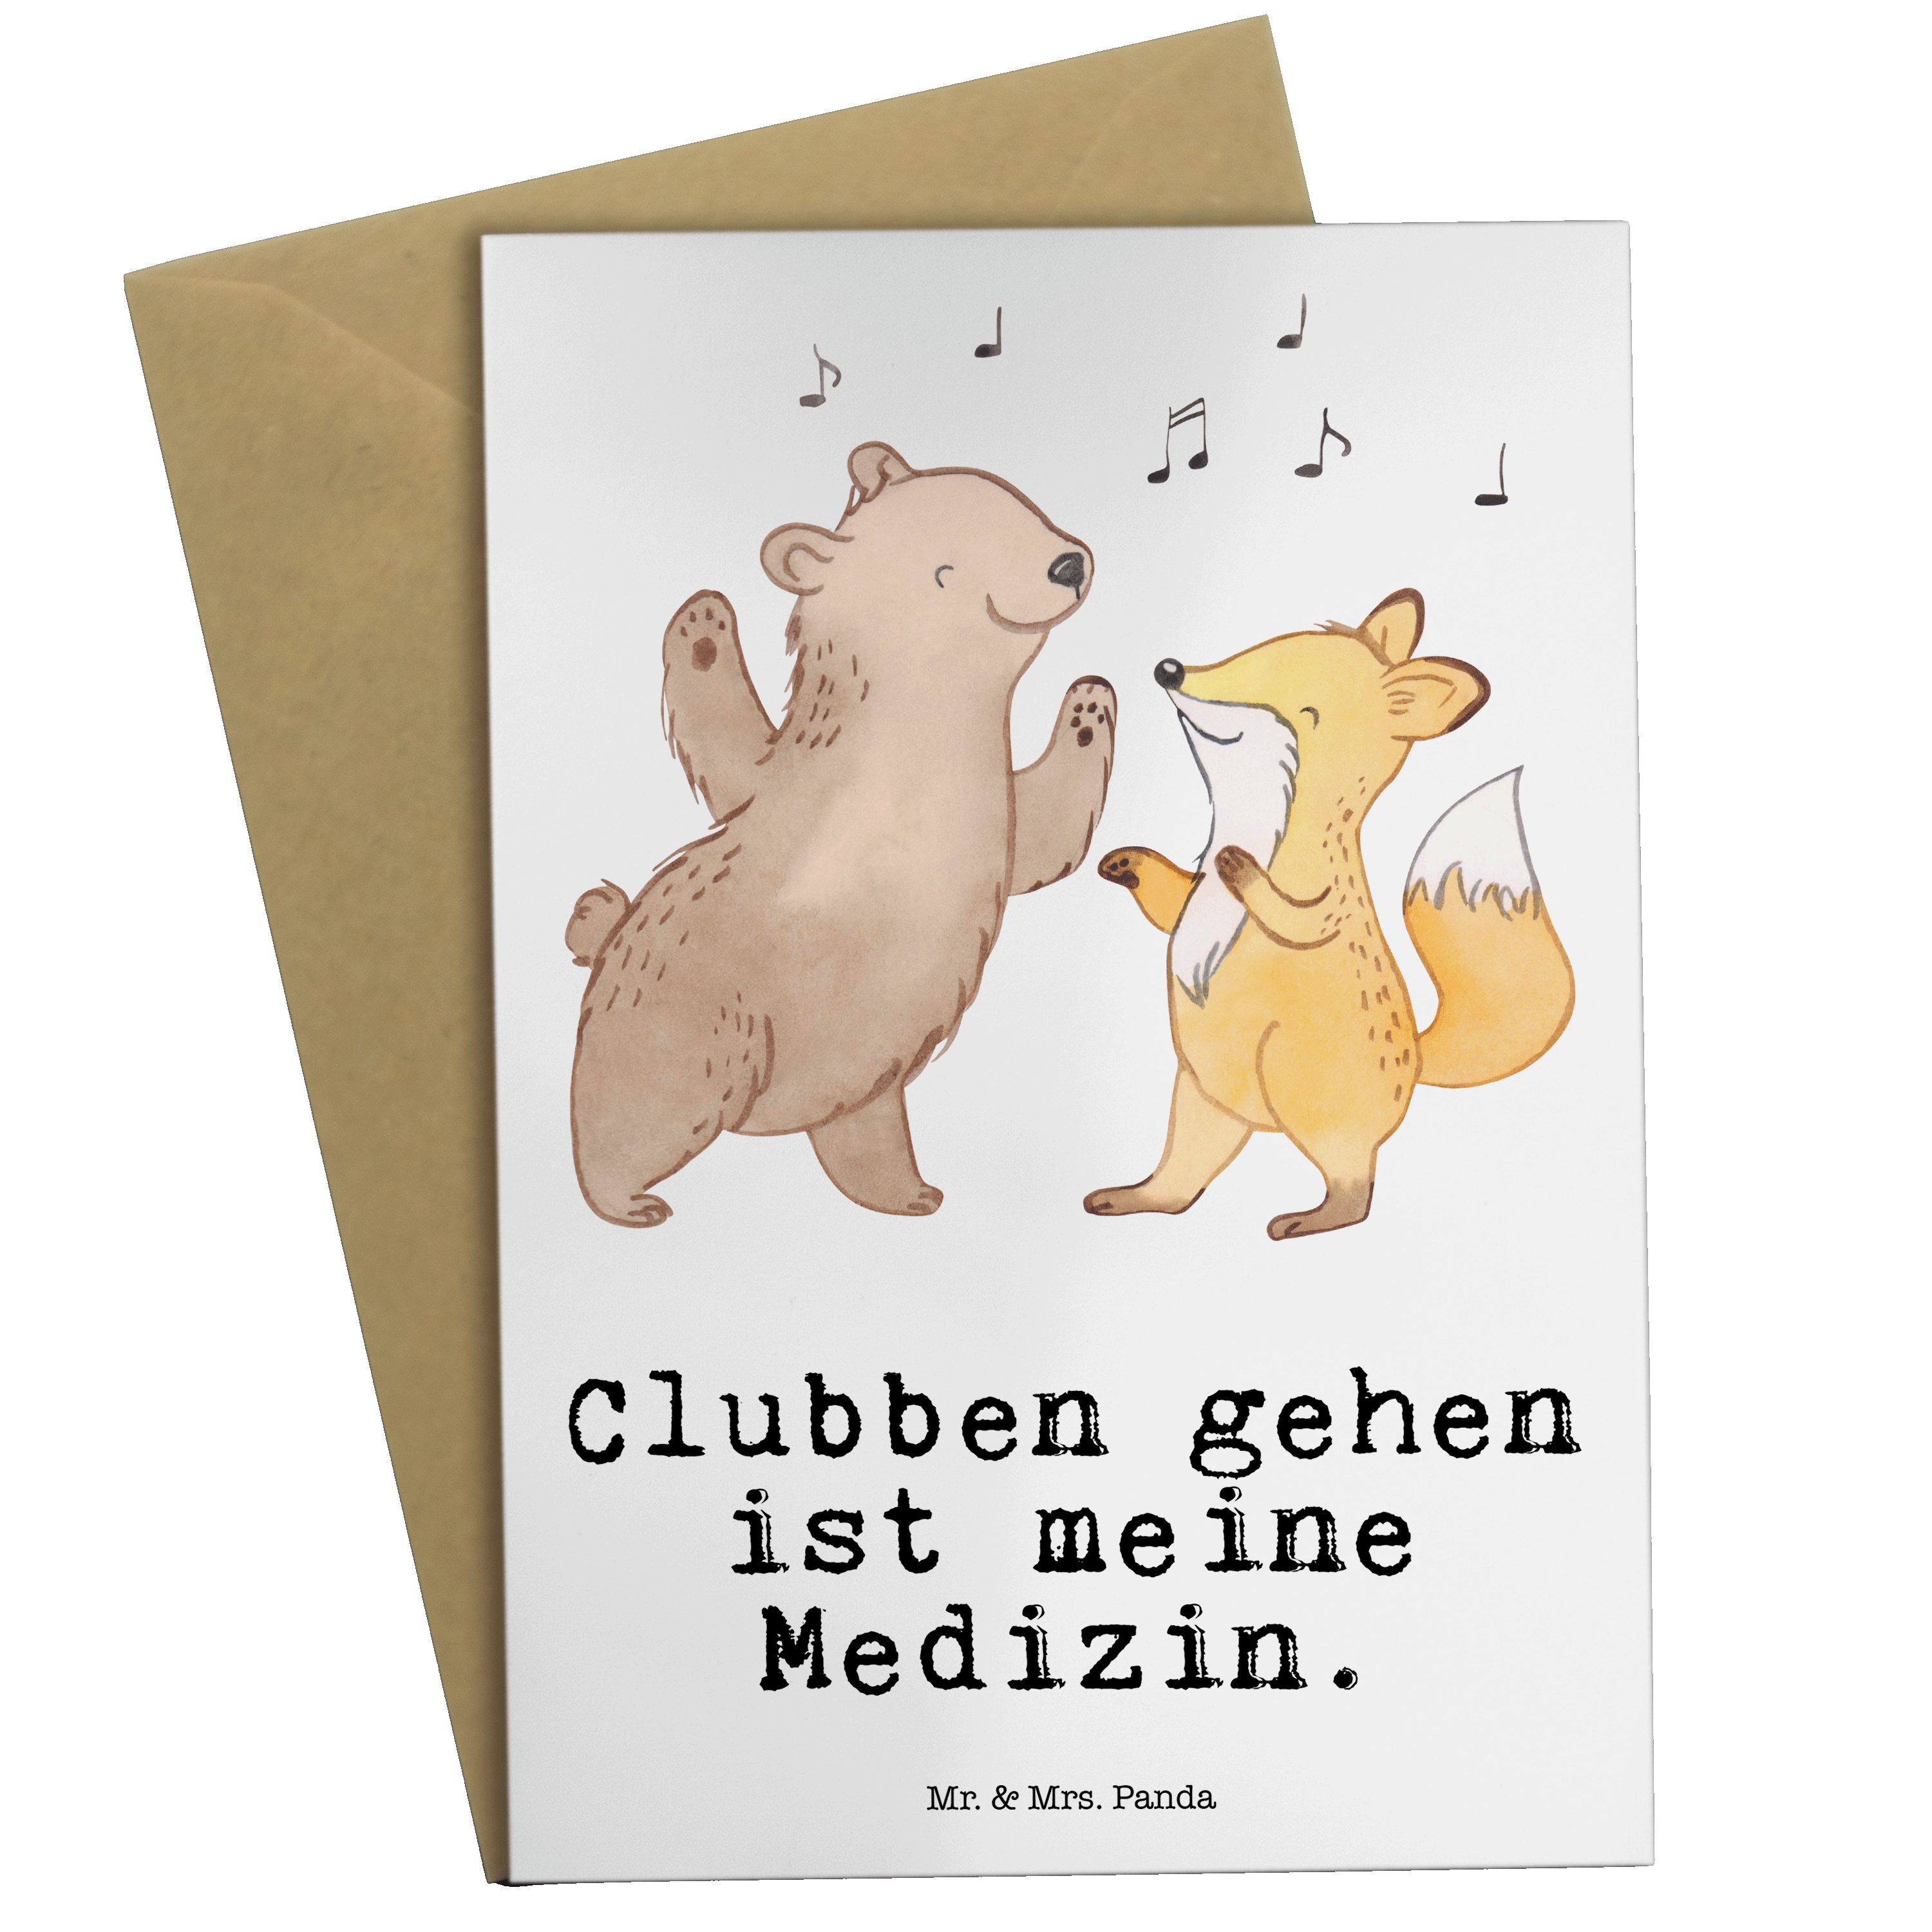 & Mrs. Geschenk, Mr. Medizin Schenken, - Fuchs Hochzei Grußkarte Panda & Danke, Weiß Bär - Disco